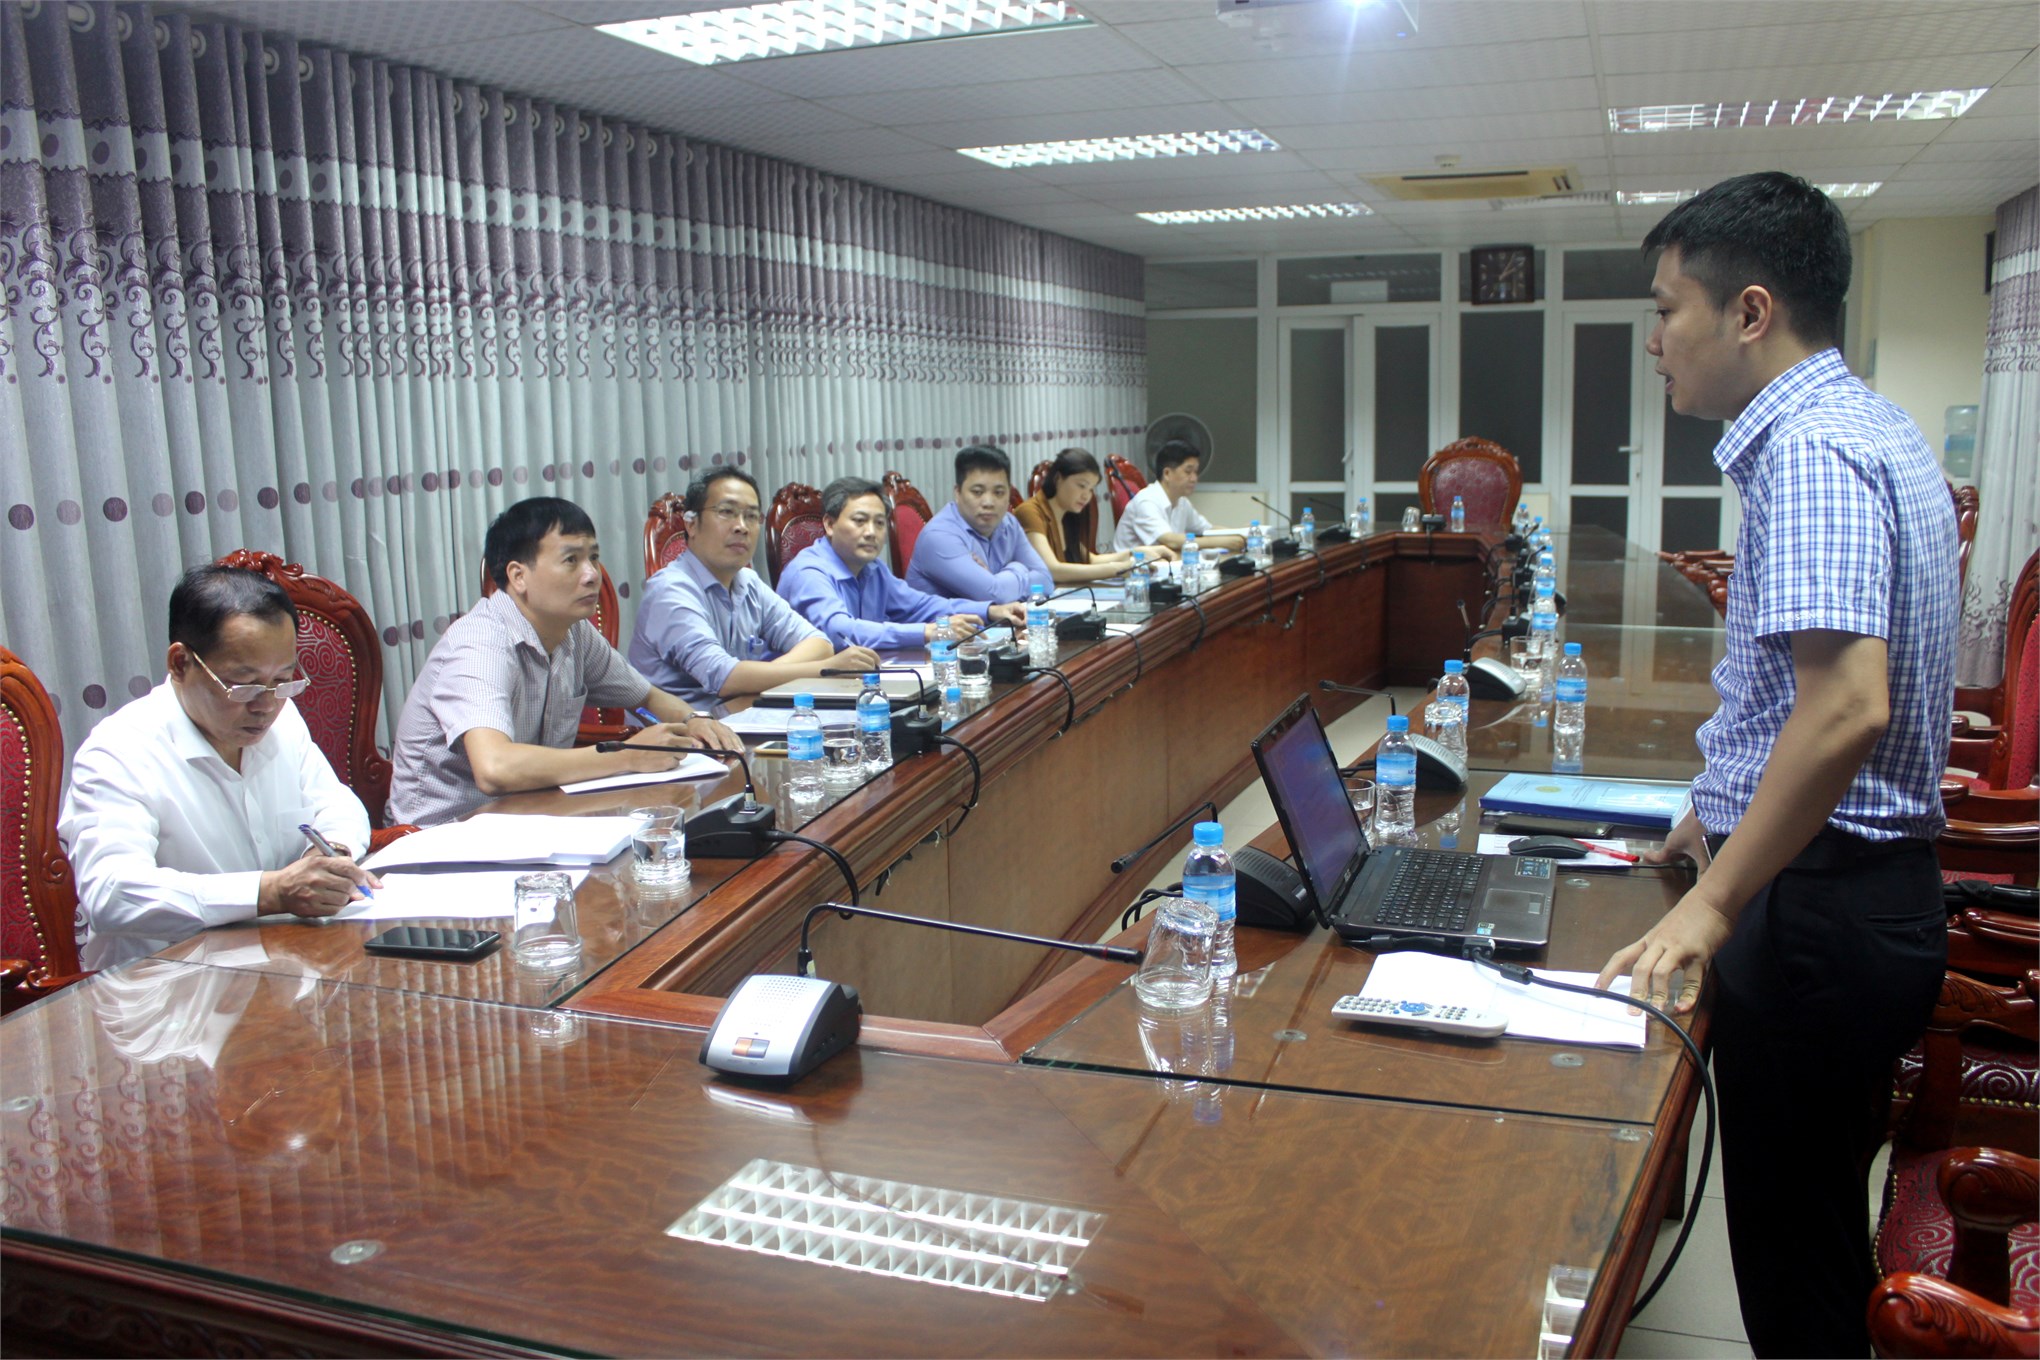 Nghiệm thu đề tài NCKH “Nghiên cứu phát triển bền vững doanh nghiệp công nghiệp nhỏ và vừa tại thành phố Hà Nội”